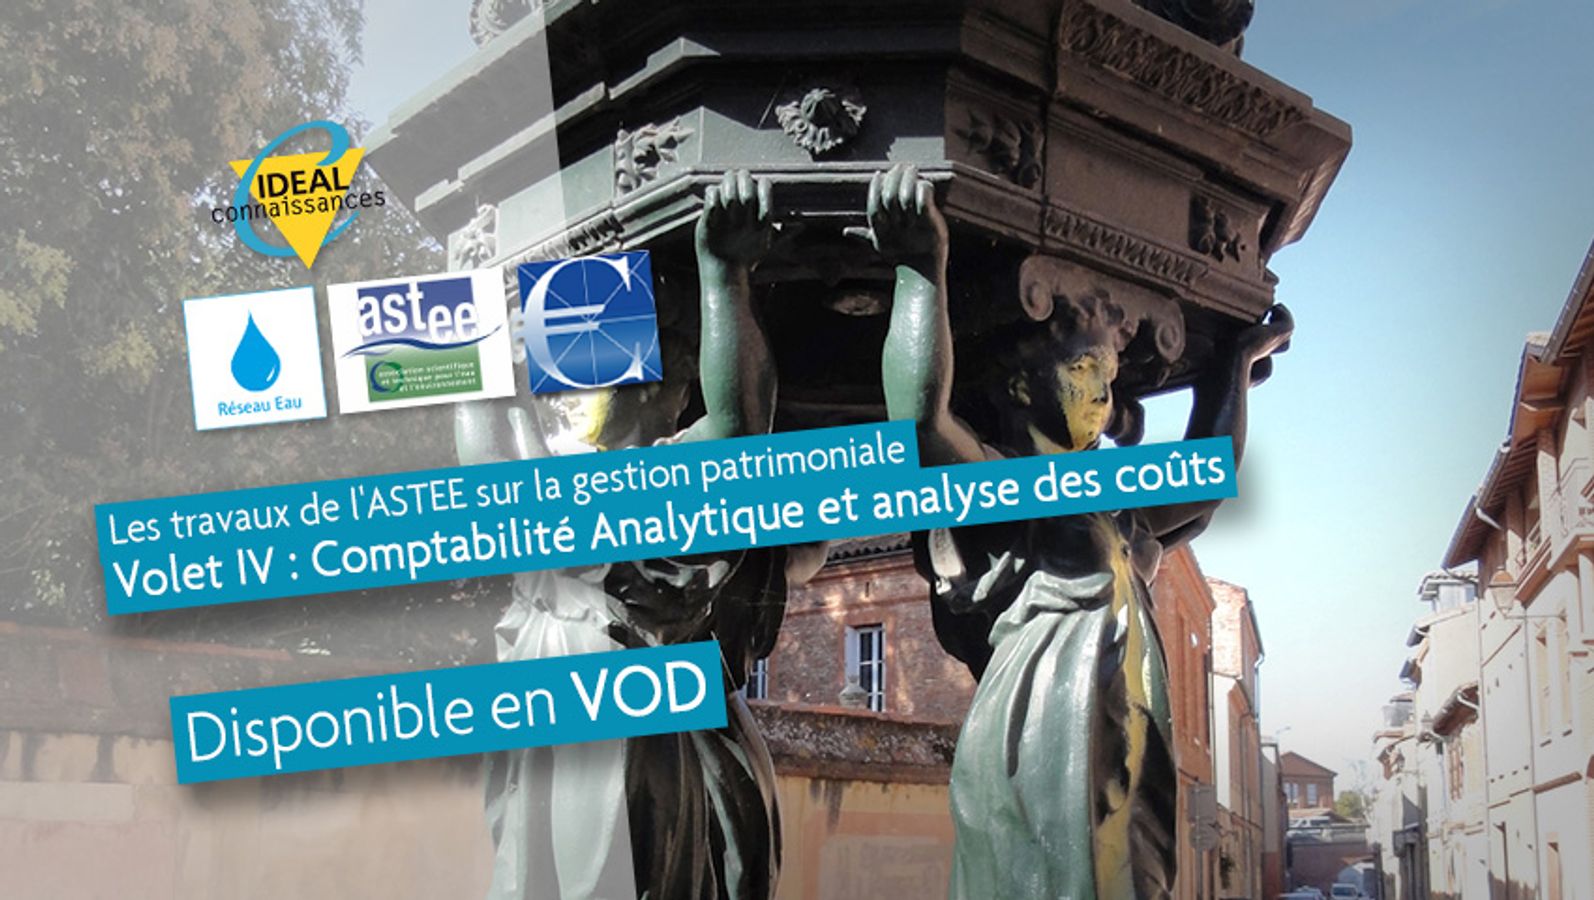 Les travaux de l'ASTEE sur la gestion patrimoniale. Volet IV : Comptabilité Analytique et analyse des coûts.